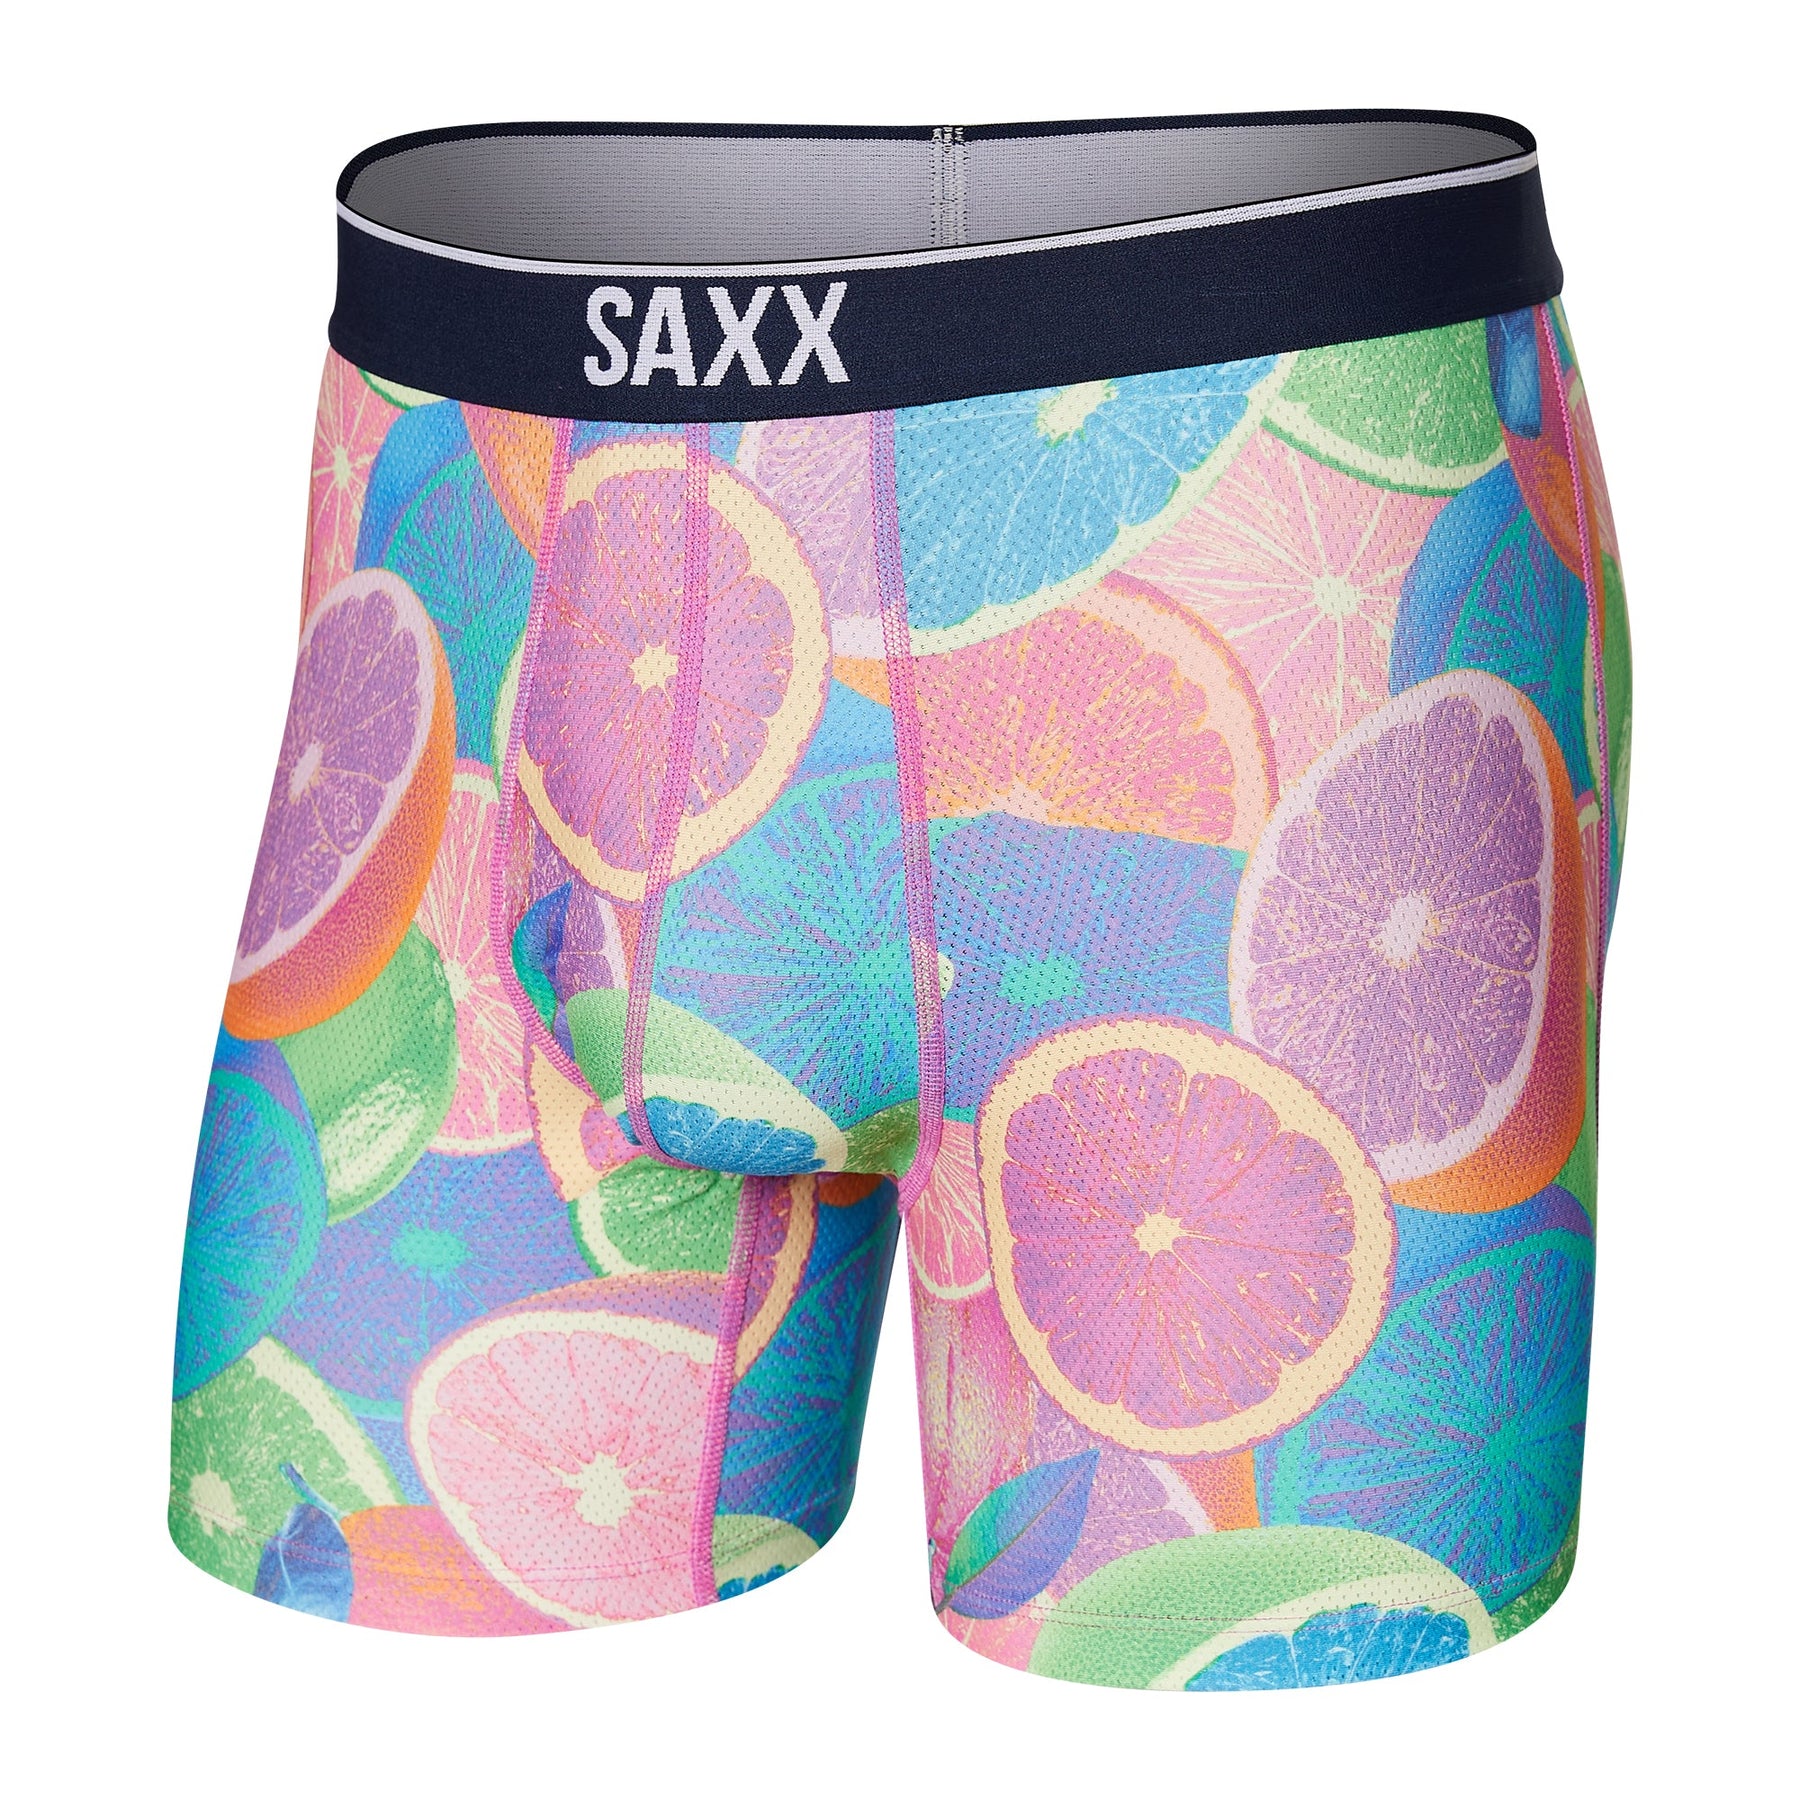 Sous-vêtement pour homme par Saxx | SXBB29 SCC | Machemise.ca, vêtements mode pour hommes